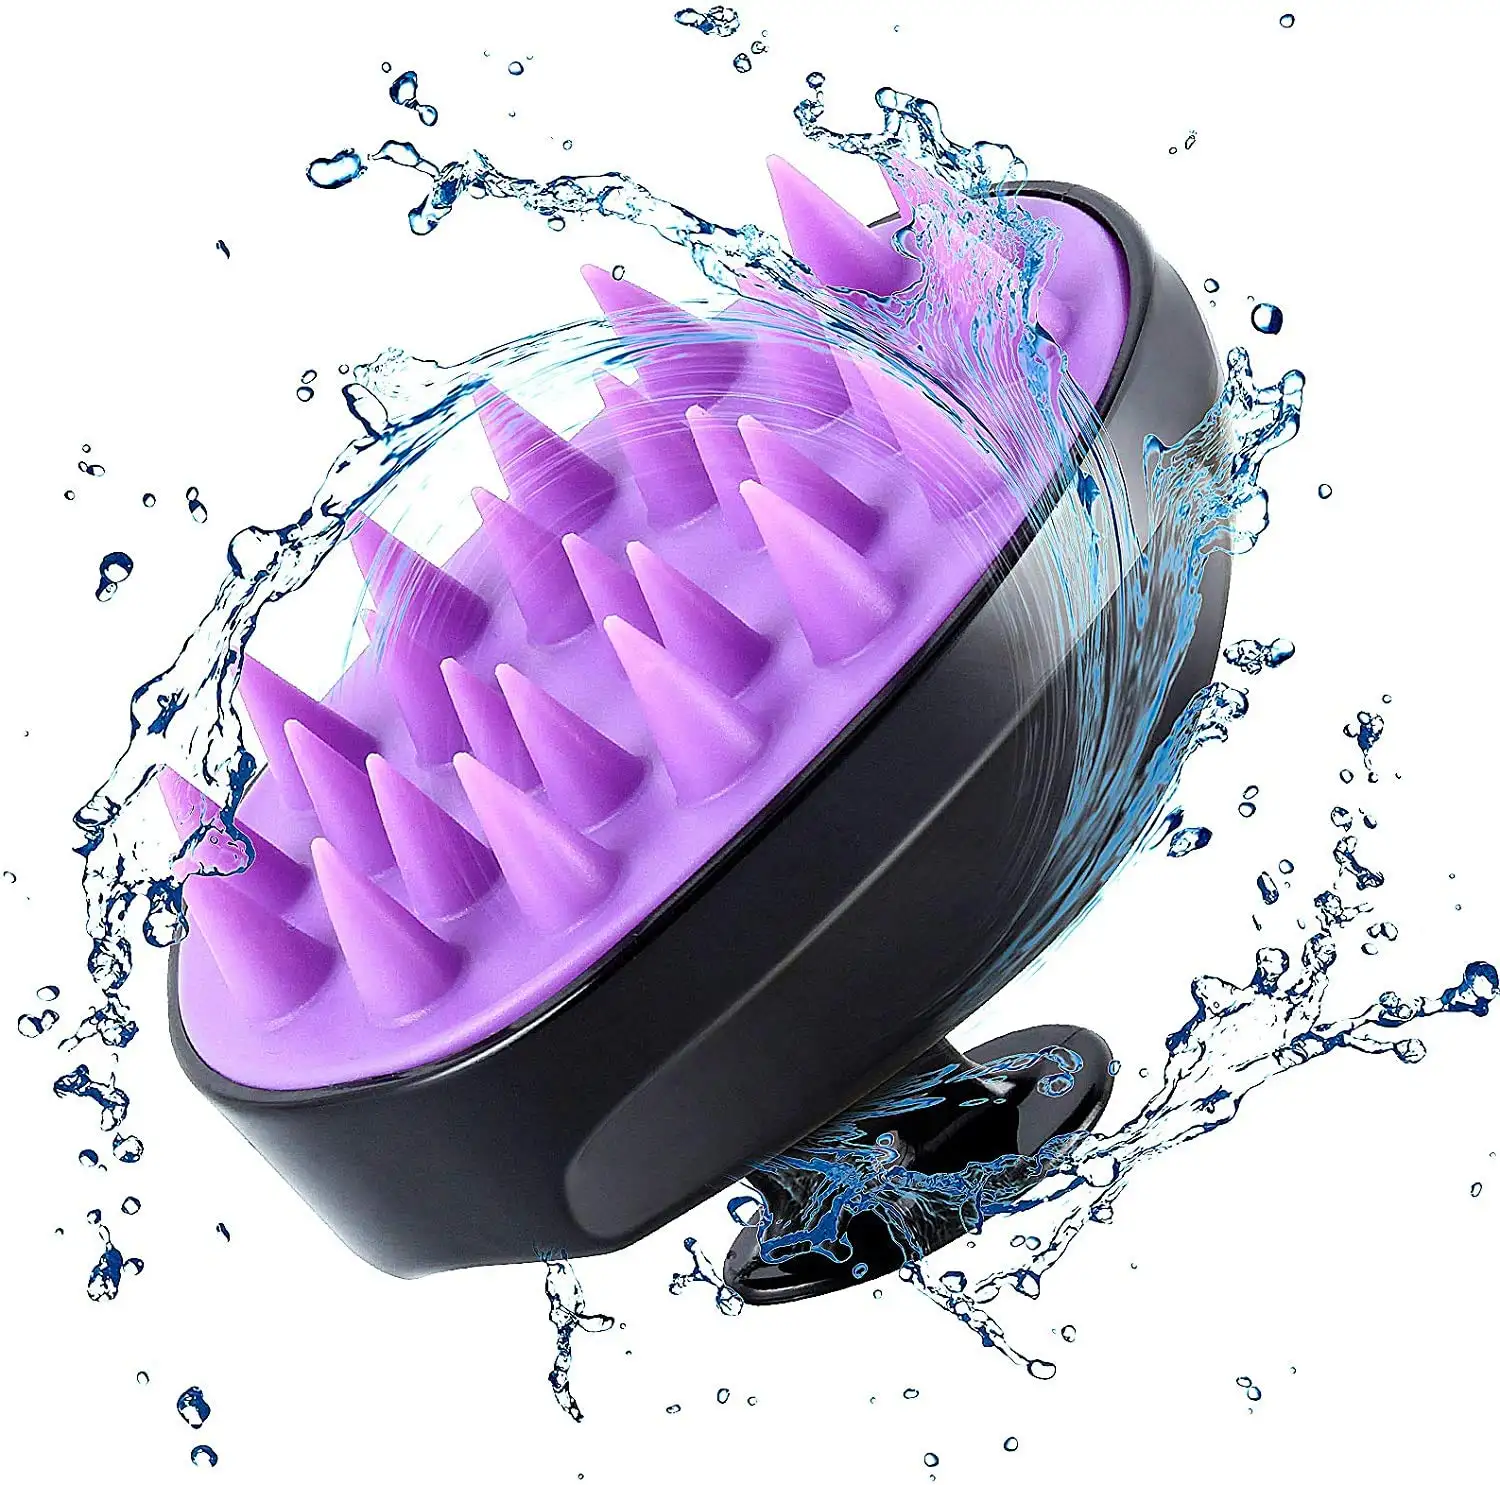 Handheld Silikon Kopfhaut Massage gerät Shampoo Haar bürste Waschen Haar Dusche Clean Bath Baby Shampoo Bürste zu verkaufen